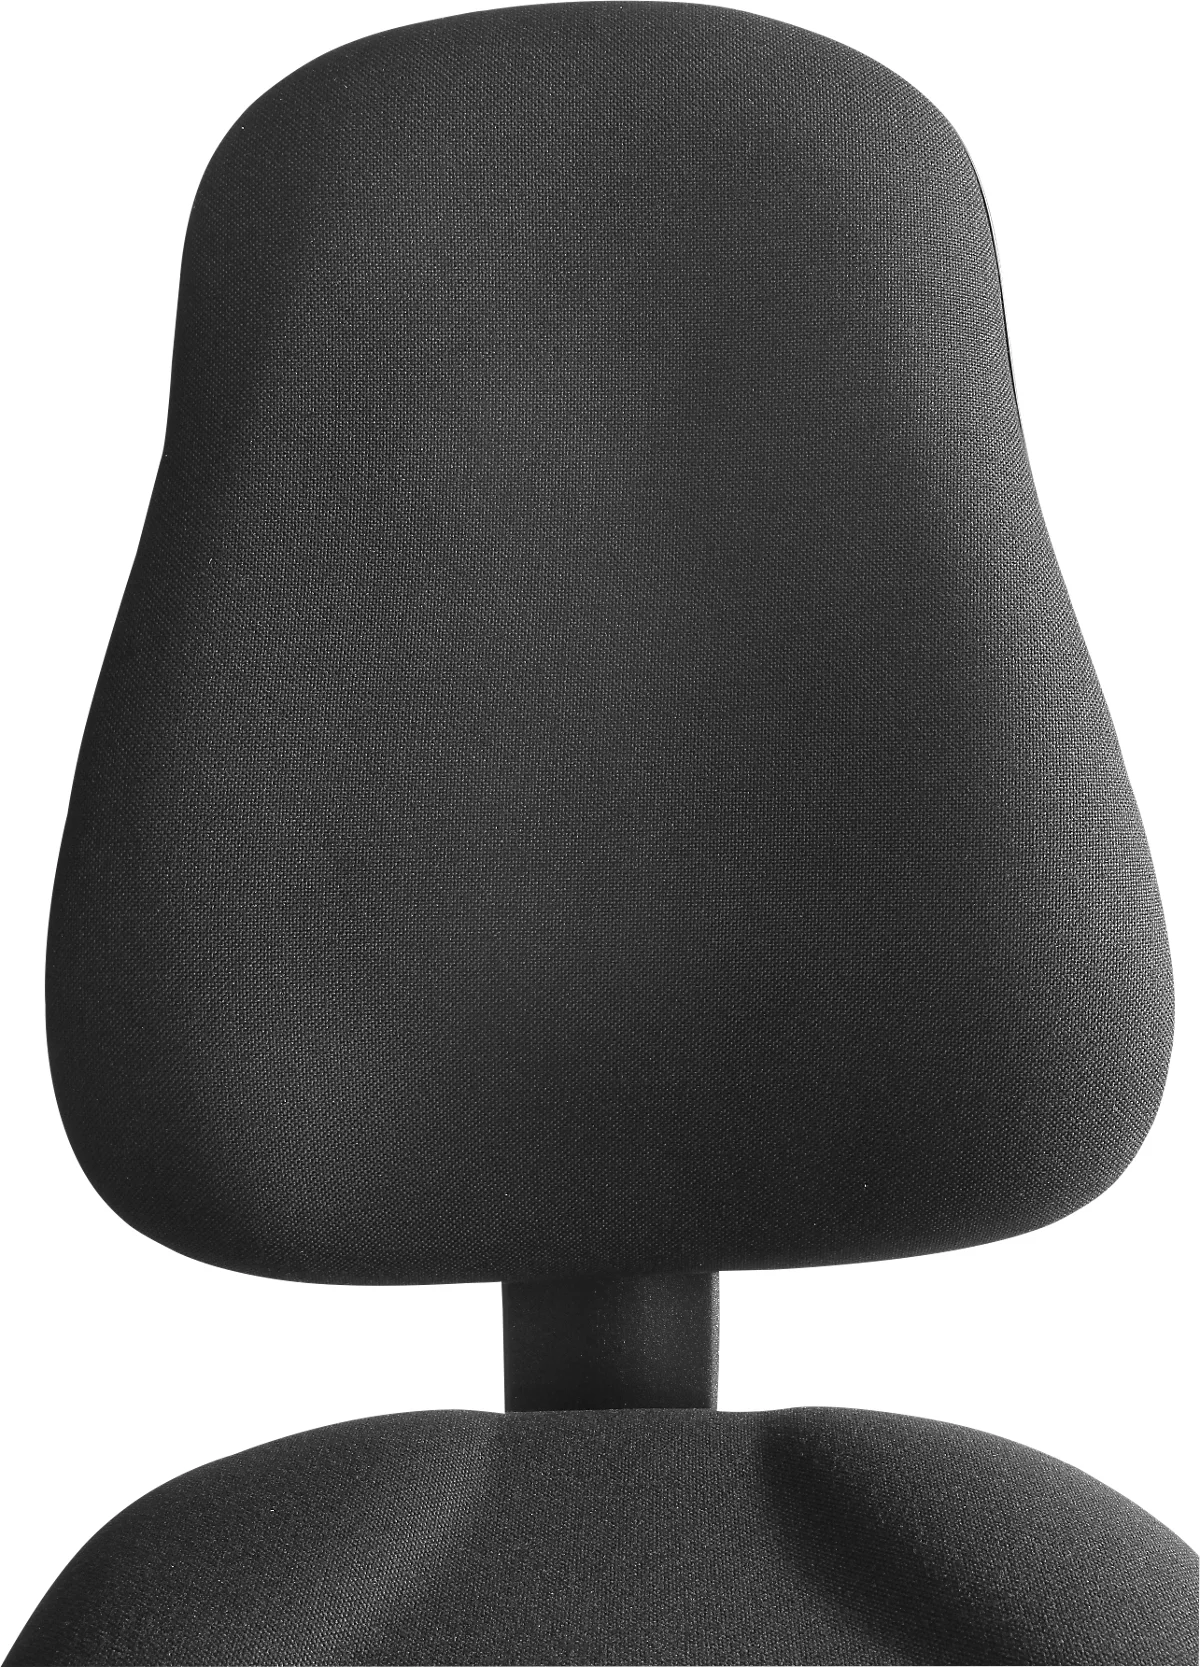 Bürostuhl Punkt Ergo, Permanentkontakt, mit Armlehnen, ergonomische Lehne, breite Sitzfläche, schwarz